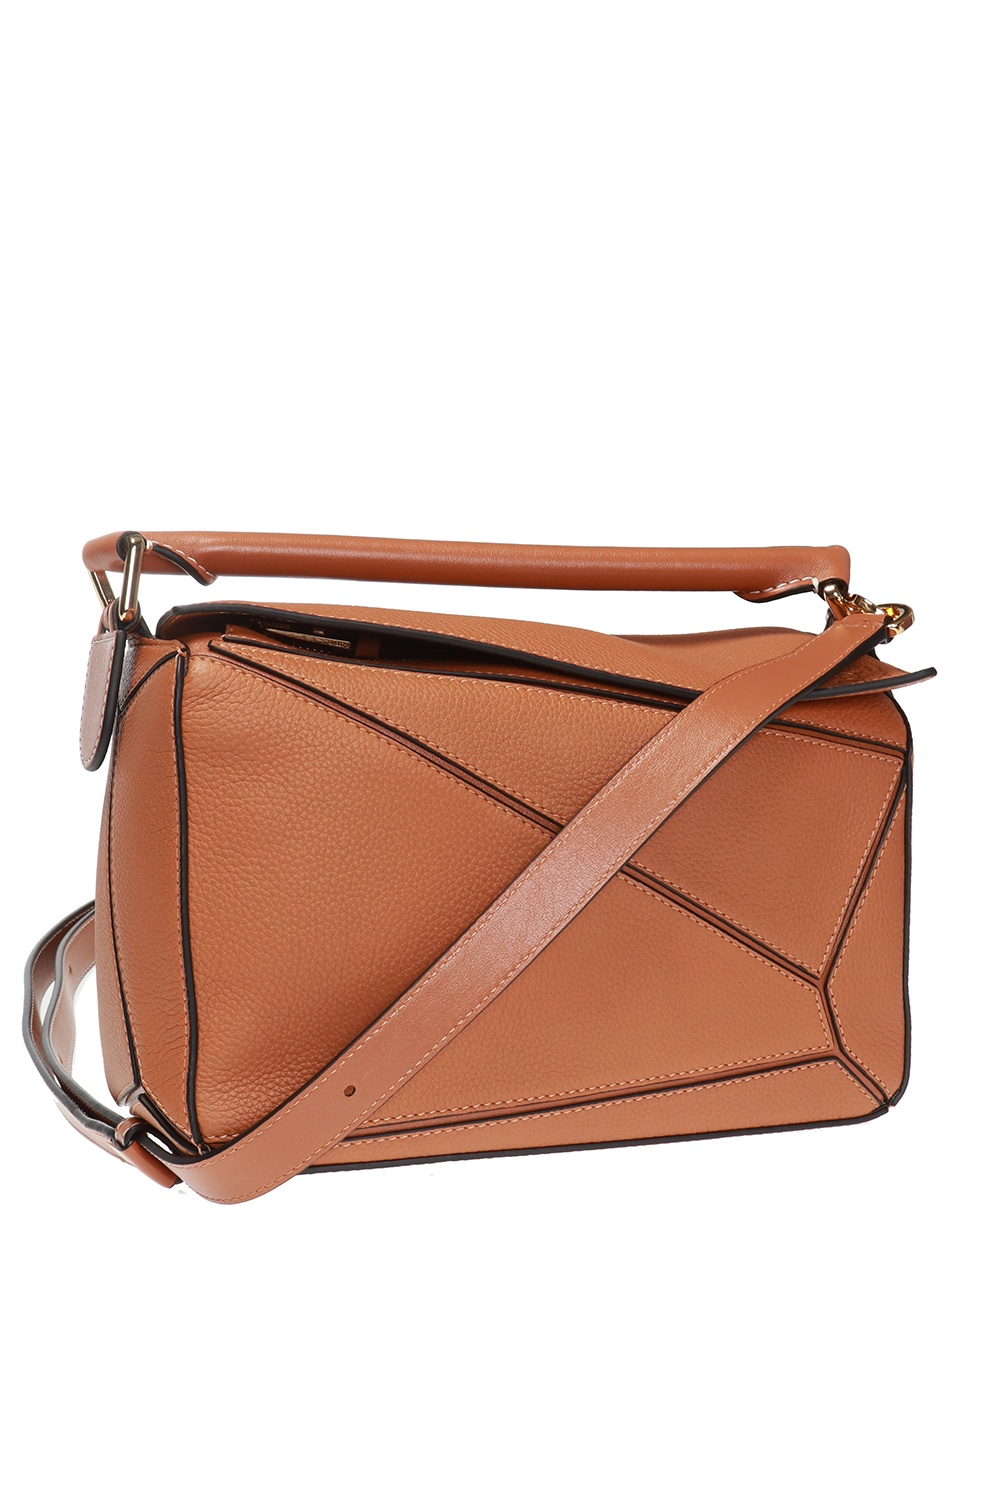 Loewe - Rust Leather Slouchy Shoulder Bag w/ Brown Tassel